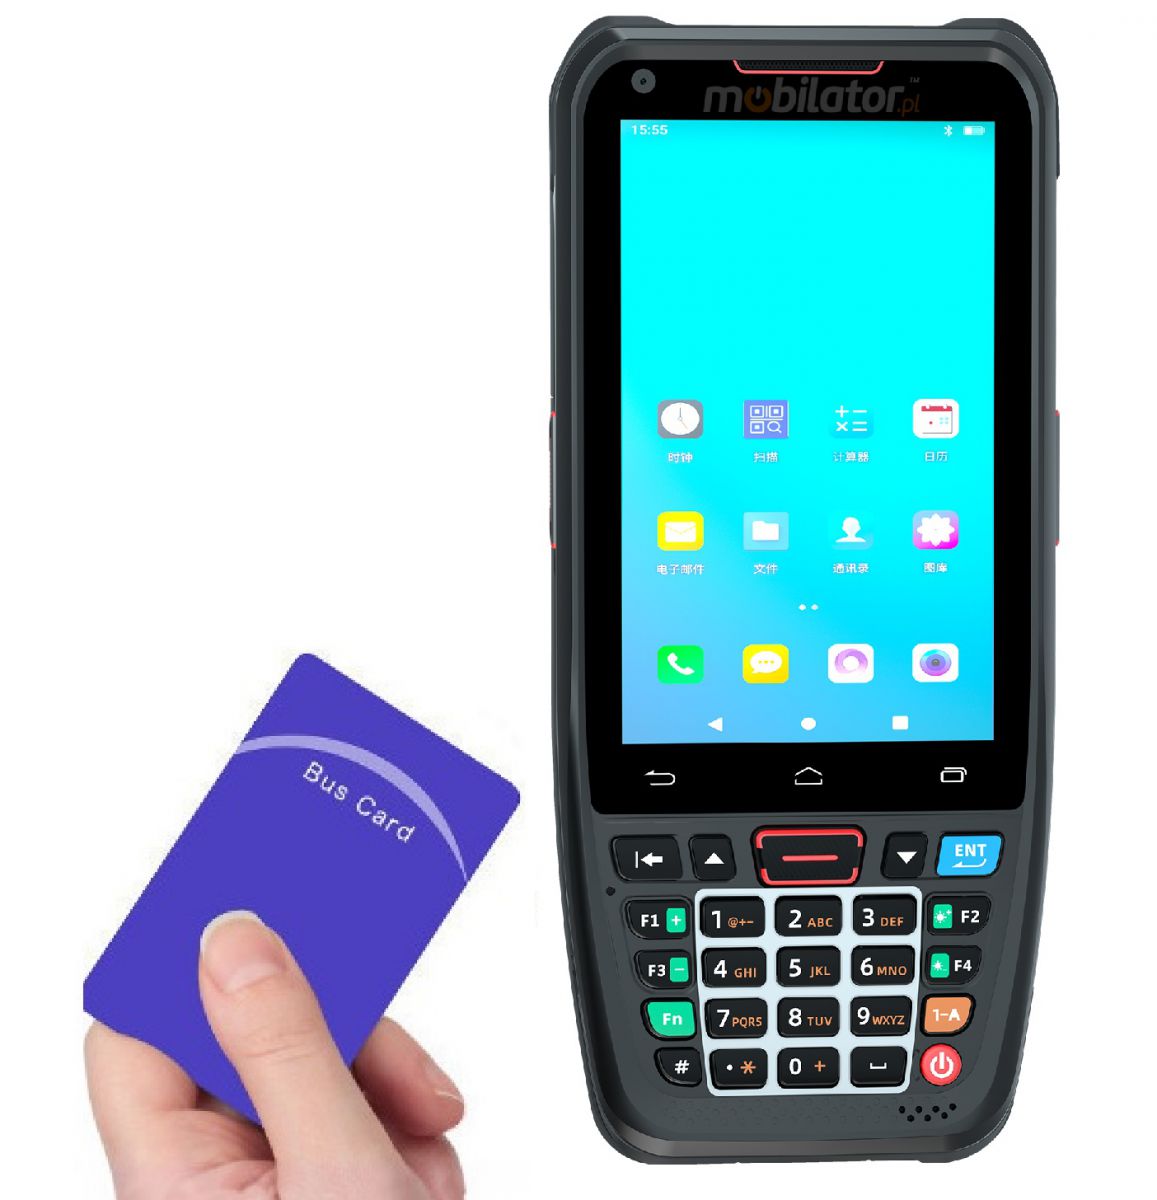 MobiPad L400N v.1 - Komfortowy w uytkowaniu kolektor danych z Bluetooth, GPS, WiFi oraz norm IP66, pamici 2GB RAM i 16GB ROM